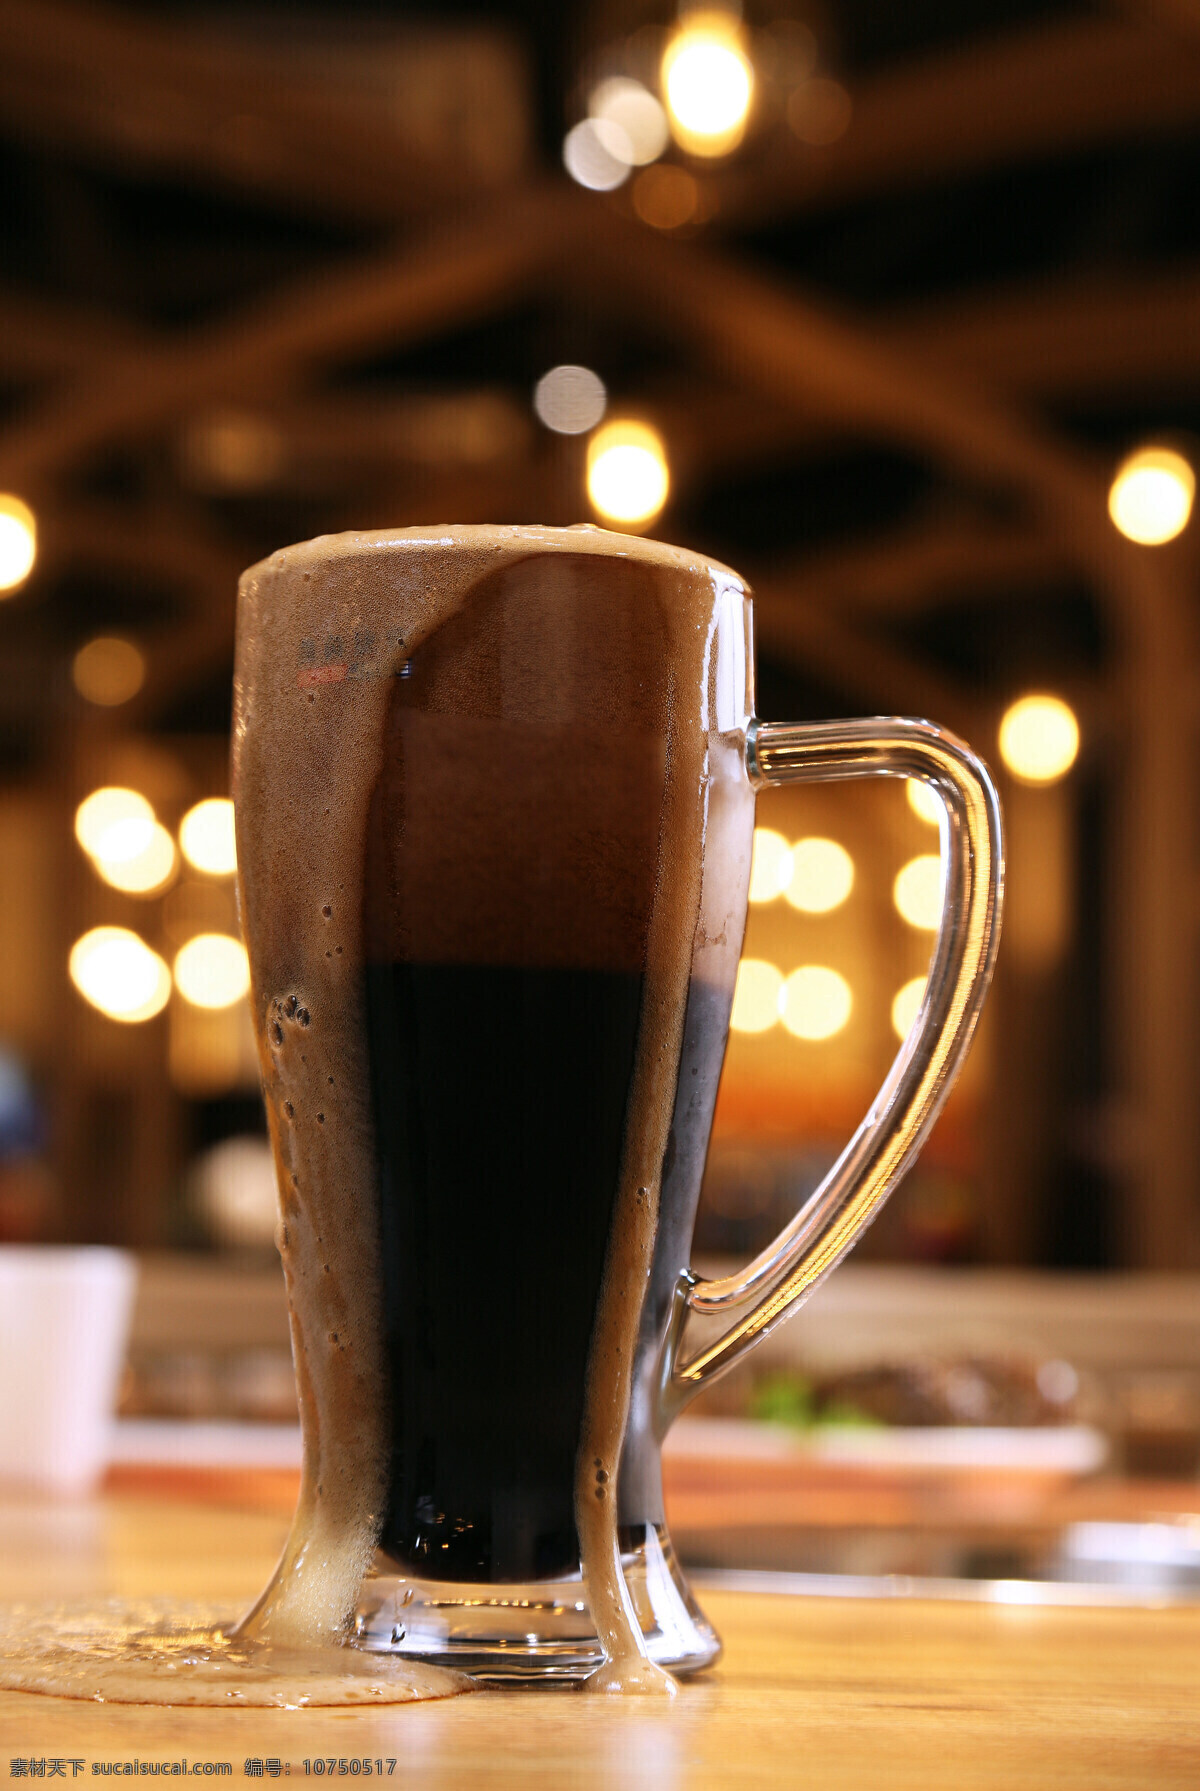 一杯黑啤酒 美味 酒水 饮料 杯子 黑啤酒 餐饮美食 饮料酒水